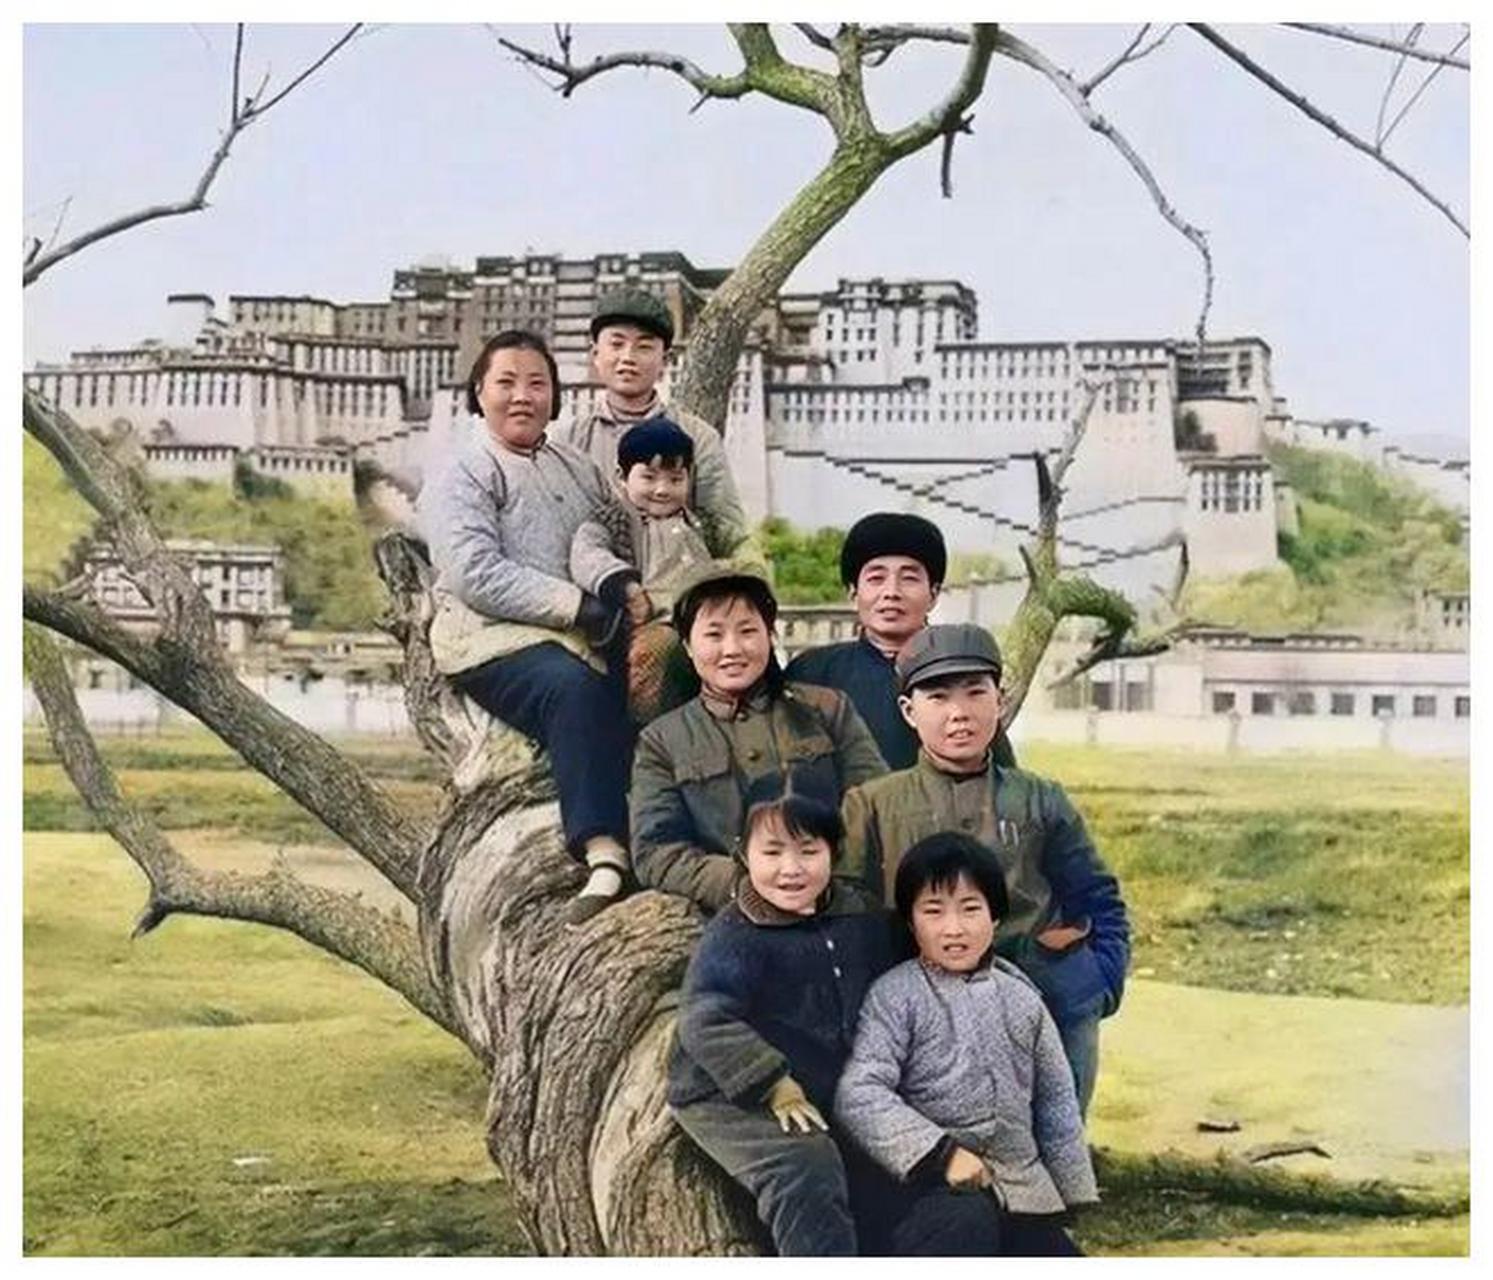 一家八口人来到西藏拉萨布达拉宫附近旅游,并拍下了一张珍贵的合照